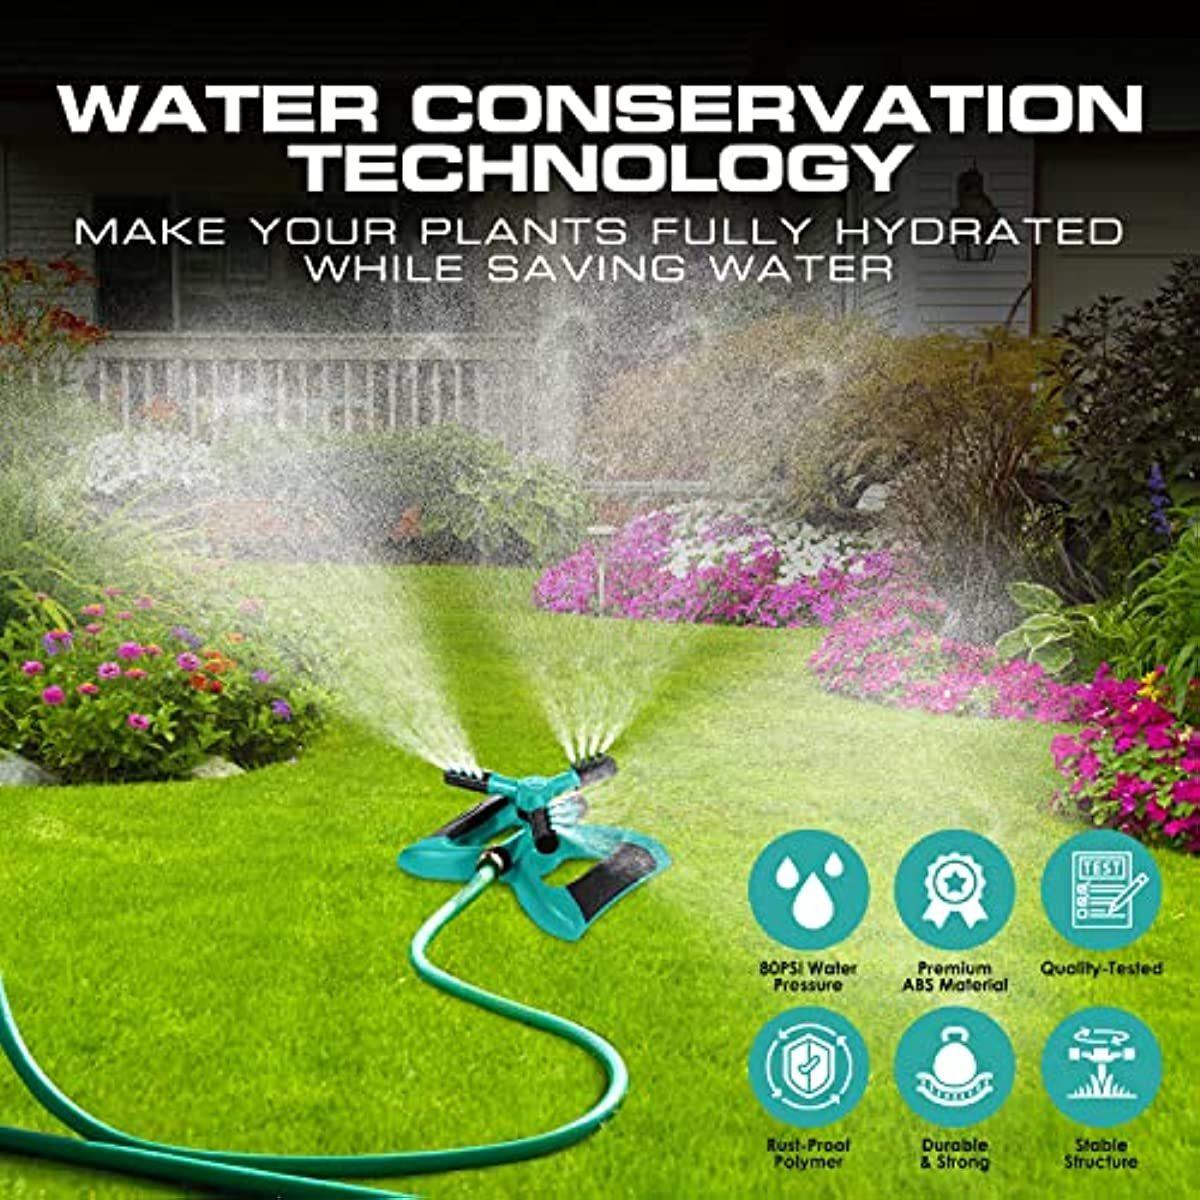 LazyHose Sprinkler for Yard; Automatic Rotating Garden Sprinkler for Large Area Coverage; Lawn and Yard Sprinklers Sprinkler - Lazy Pro